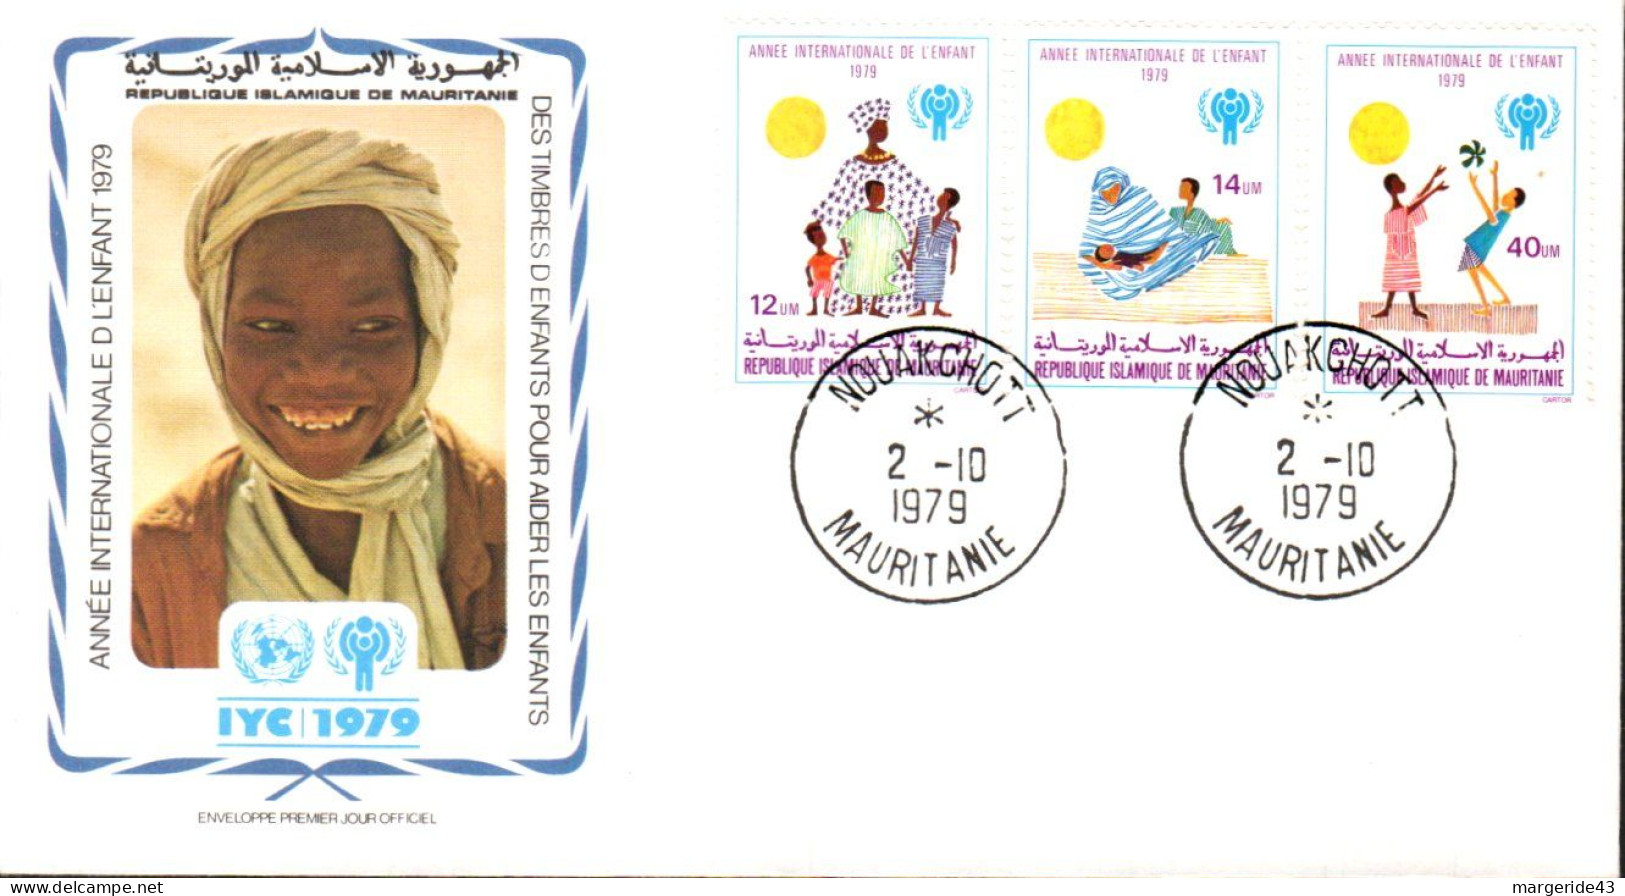 MAURITANIE FDC 1979 ANNEE DE L'ENFANT UNICEF - Mauritanië (1960-...)